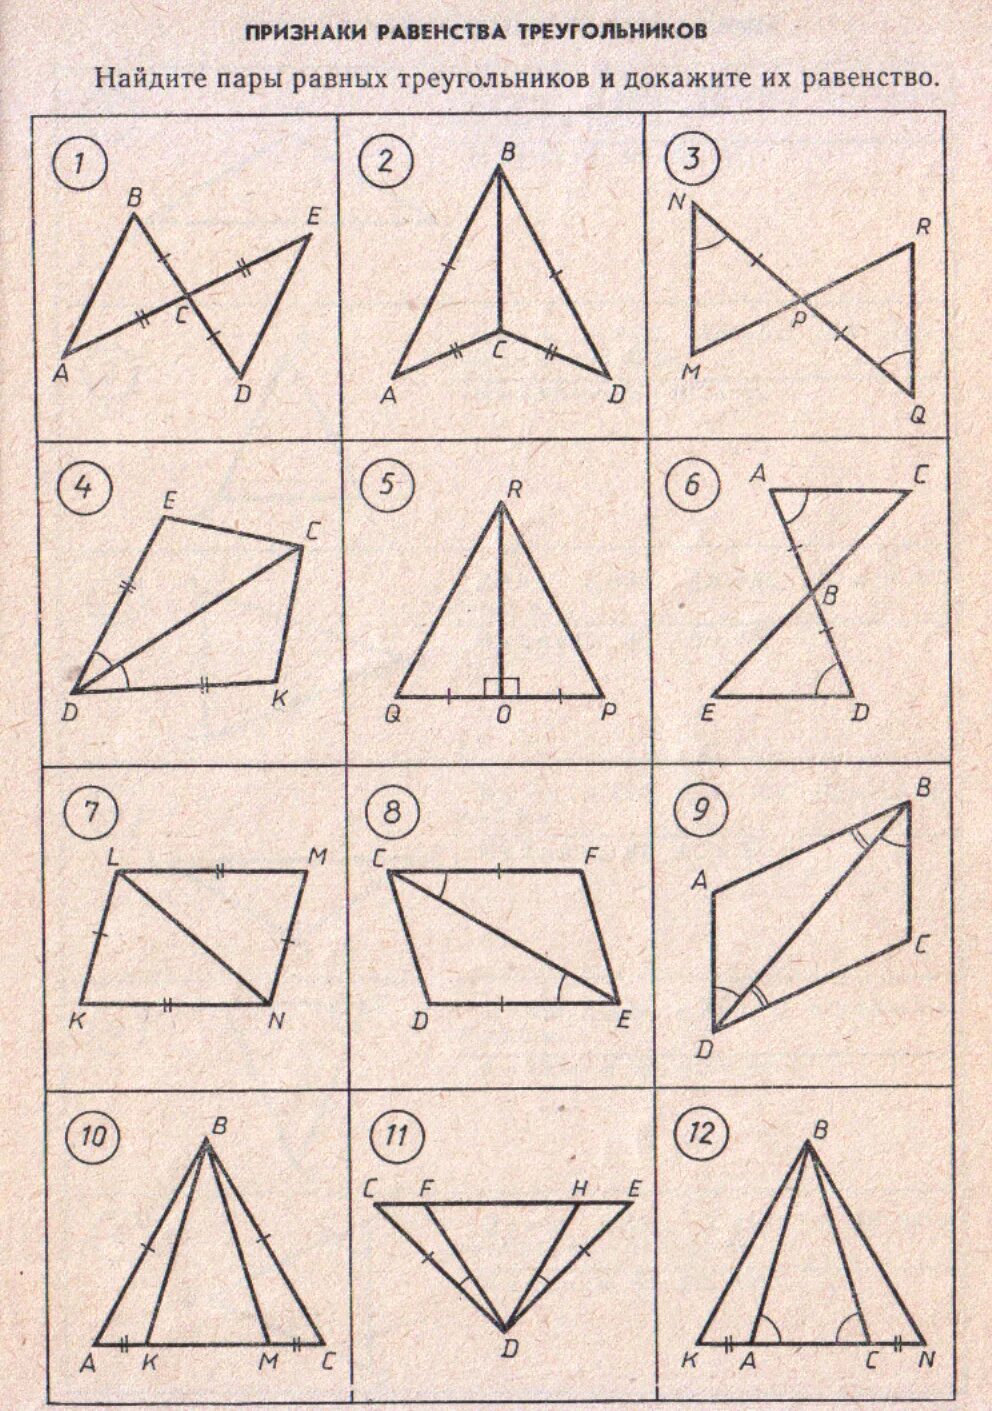 3 признаки равенства треугольников задачи. Признаки равенства треугольников 7 класс геометрия задачи. Задачи в чертежах на признаки равенства треугольников. Задачи на равенство треугольников по готовым чертежам. Задачи на равенство треугольников 7 класс на готовых чертежах.